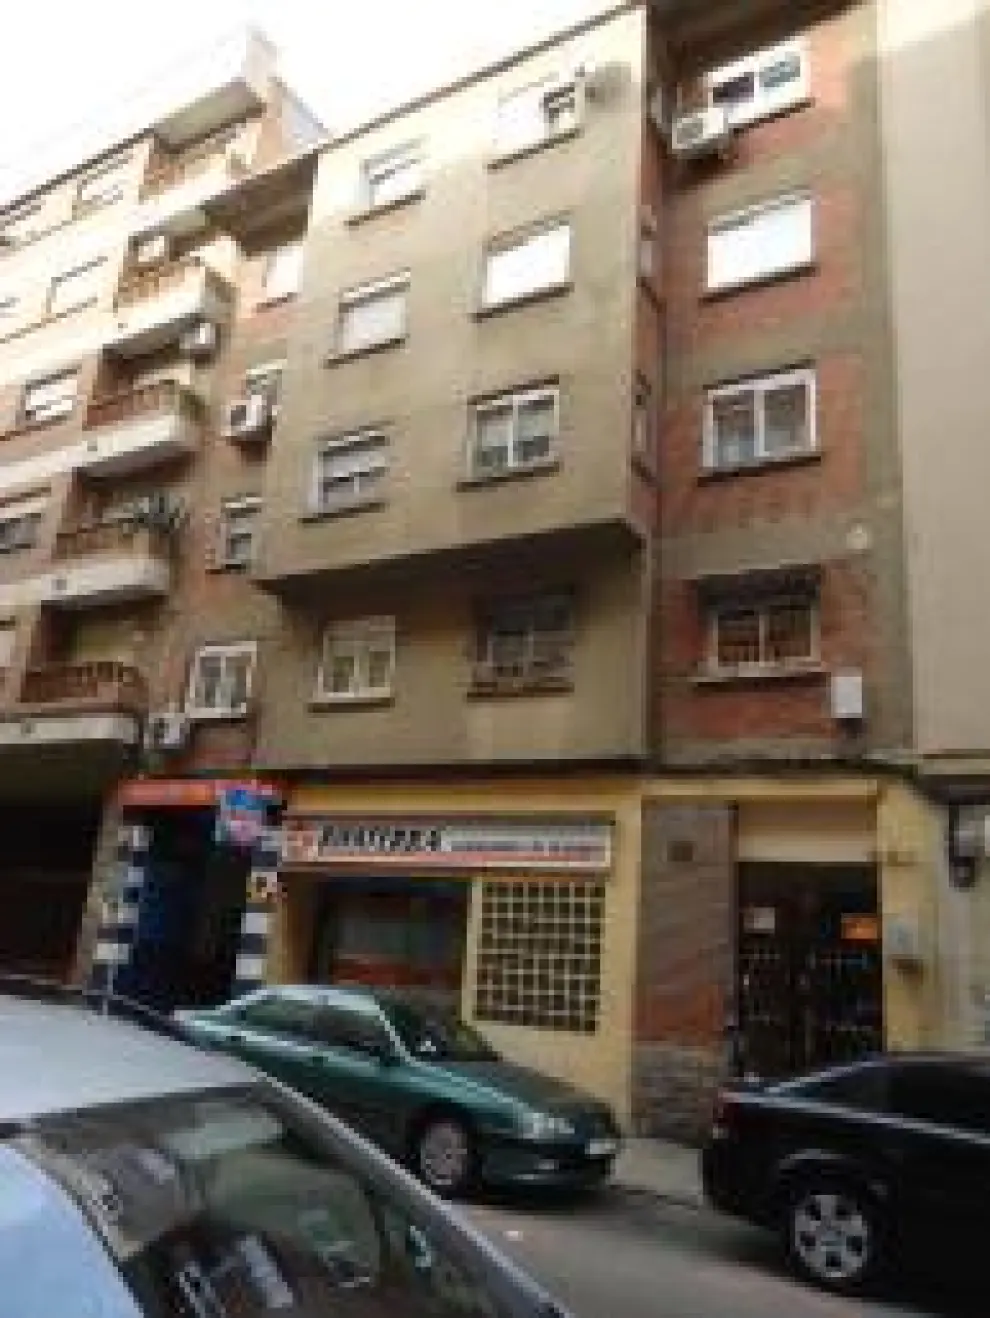 Algunos de los pisos rebajados en Zaragoza